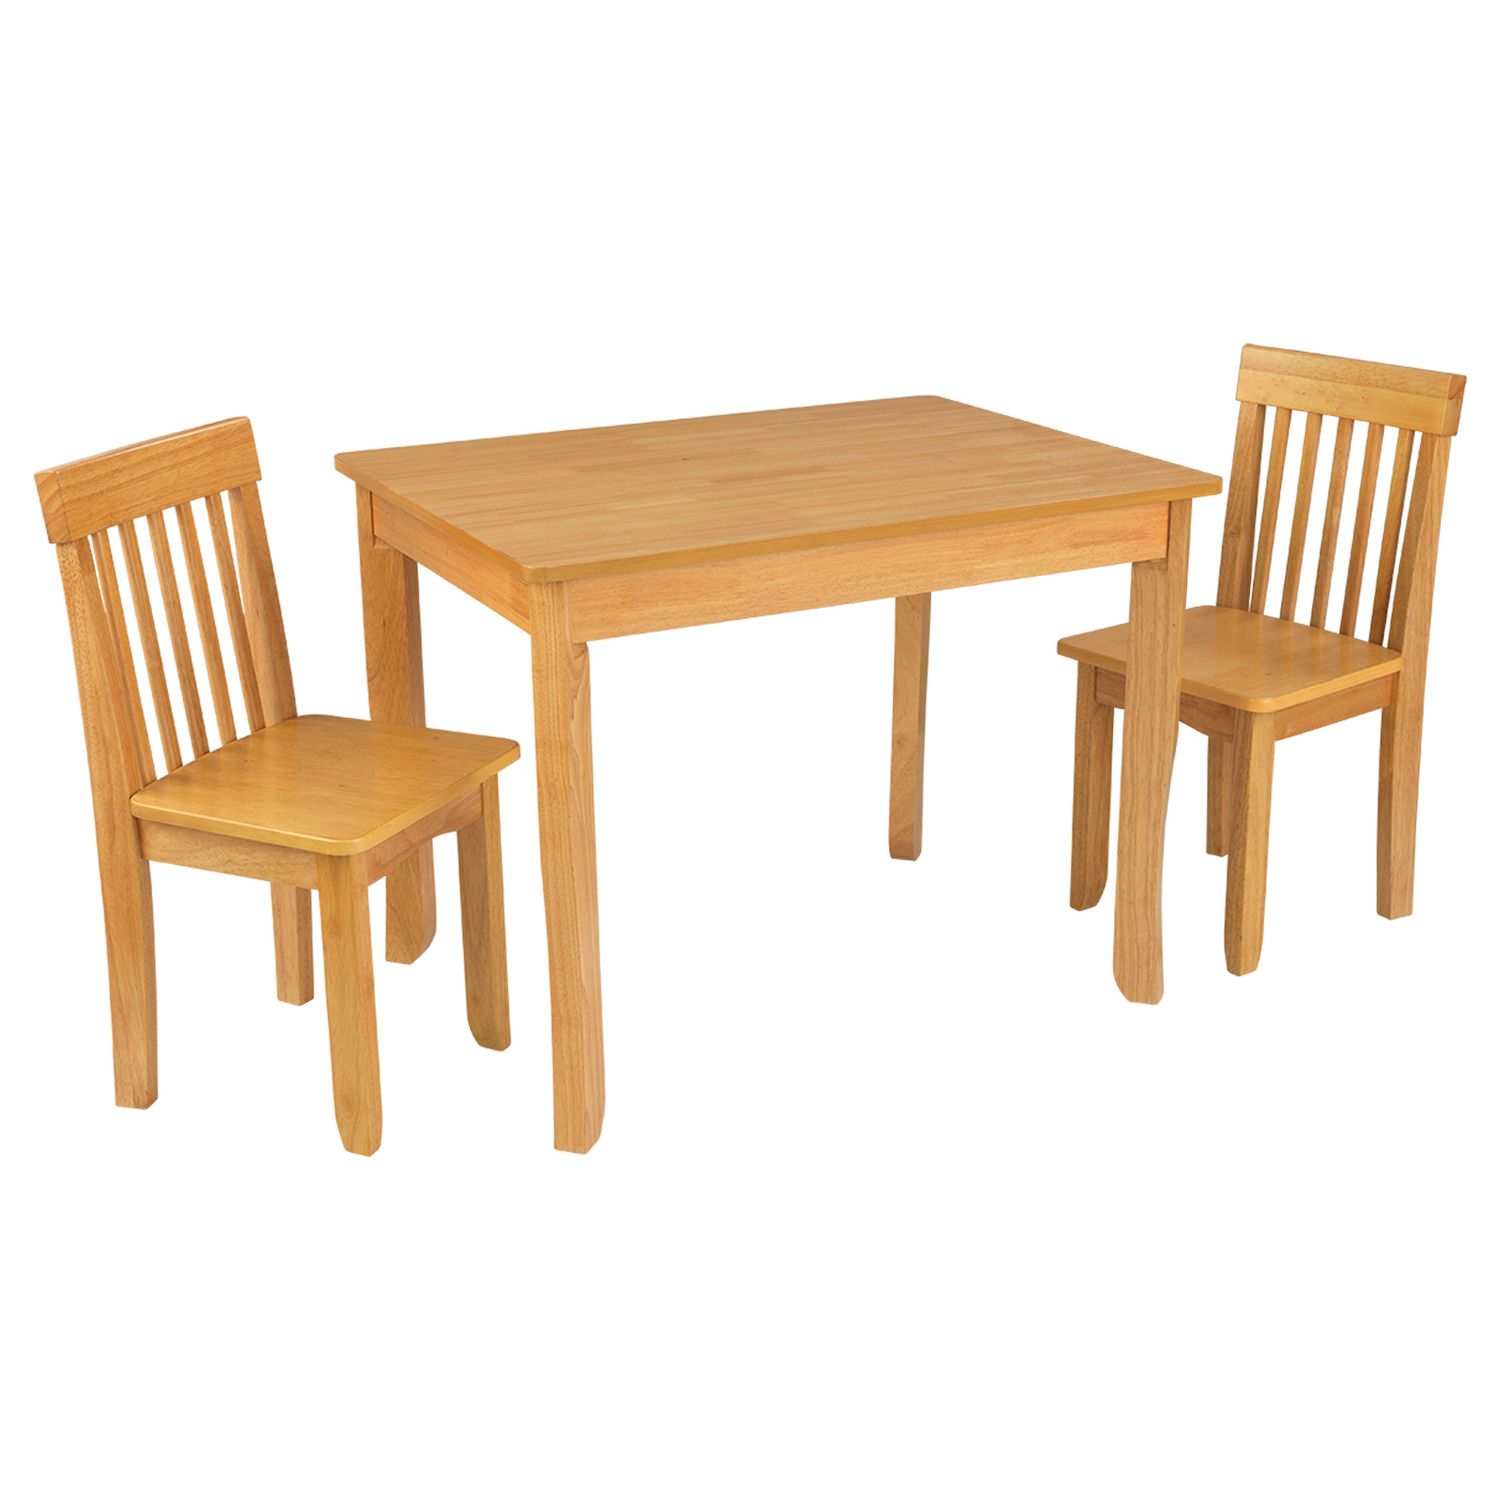 melissa doug table chairs